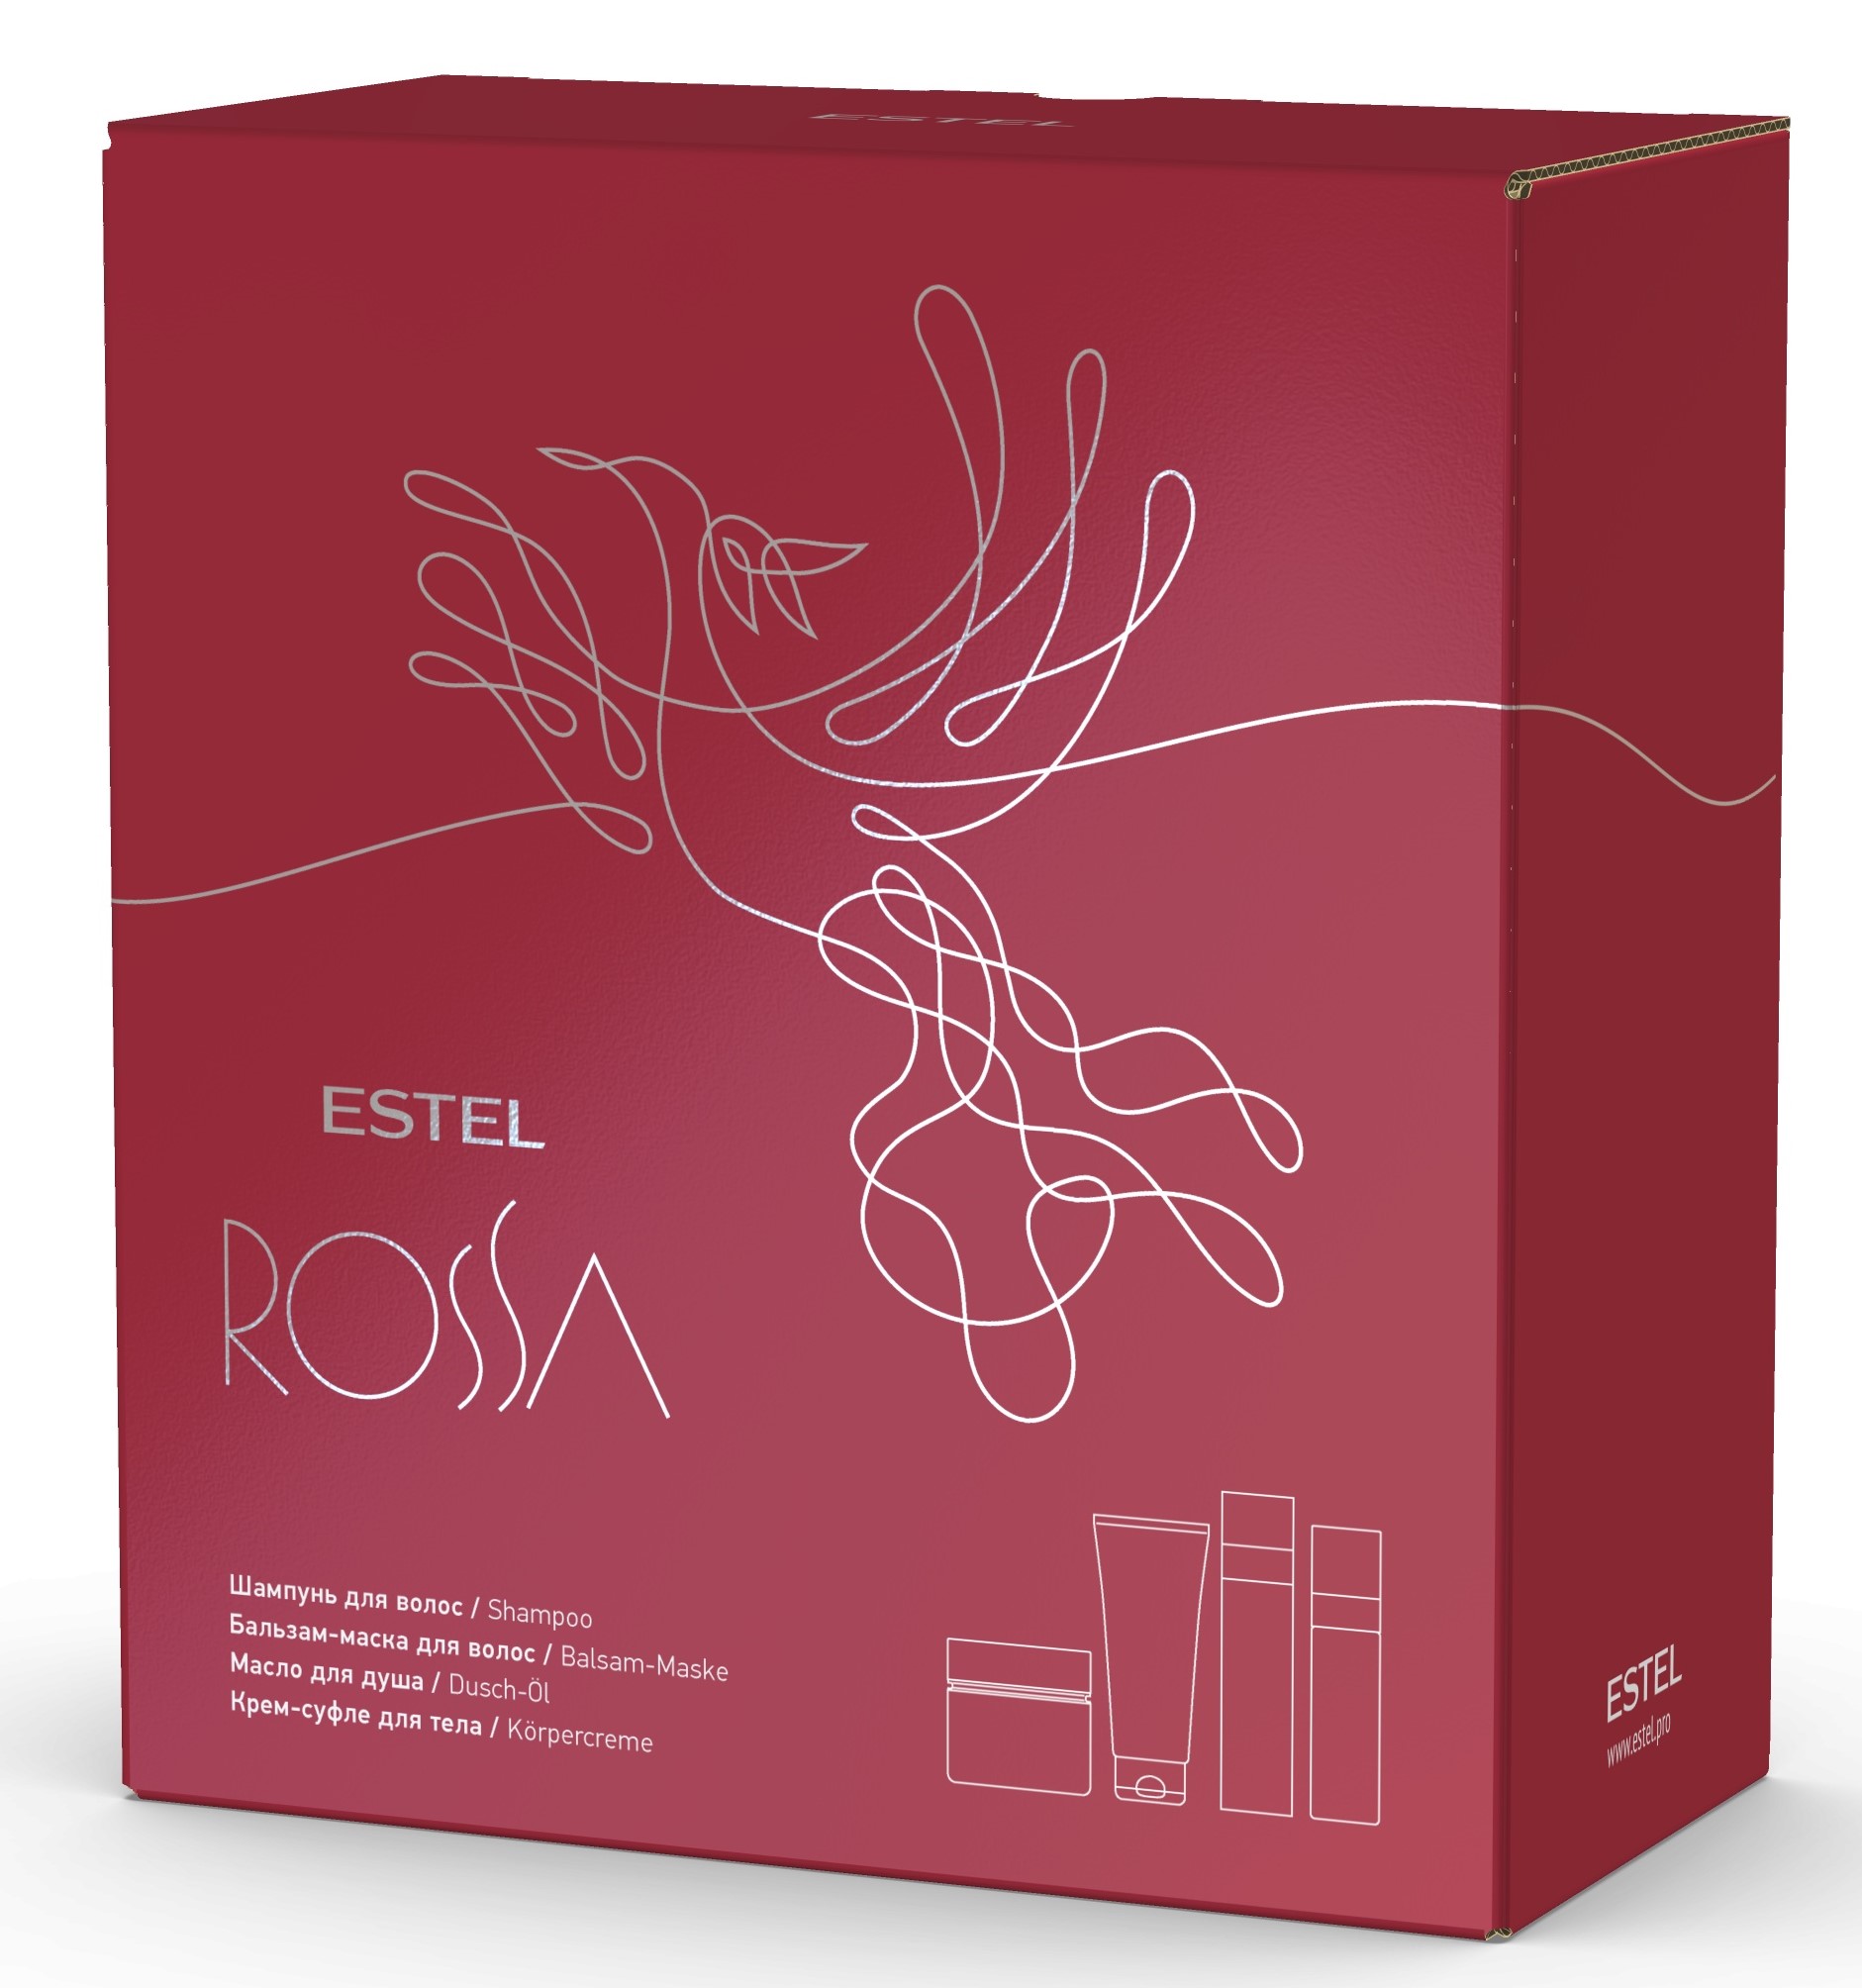 Эстель Подарочный набор парфюмерных компаньонов Rossa: шампунь 250 мл + бальзам-маска 200 мл + масло 150 мл + крем-суфле 200 мл (Estel, Rossa) фото 0